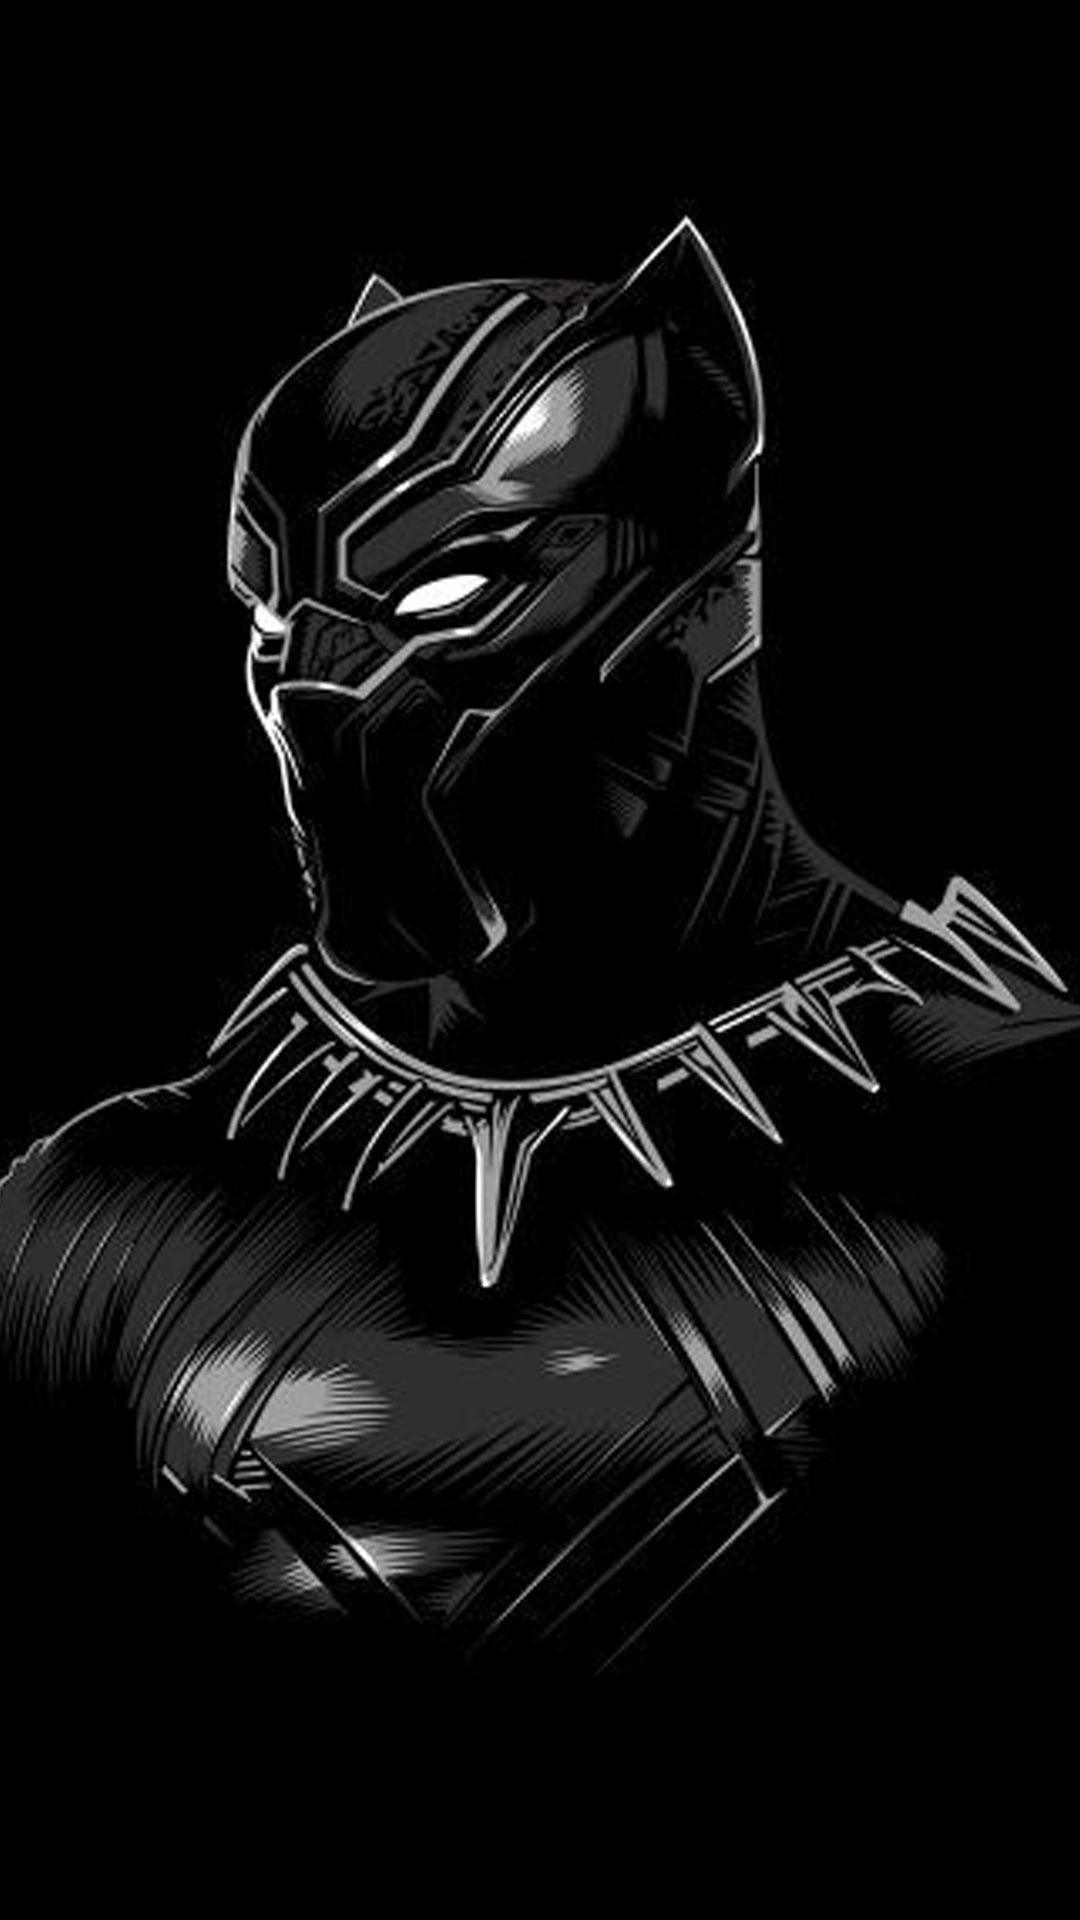 Free download Black Panther Superhero Wallpaper Top Black Panther